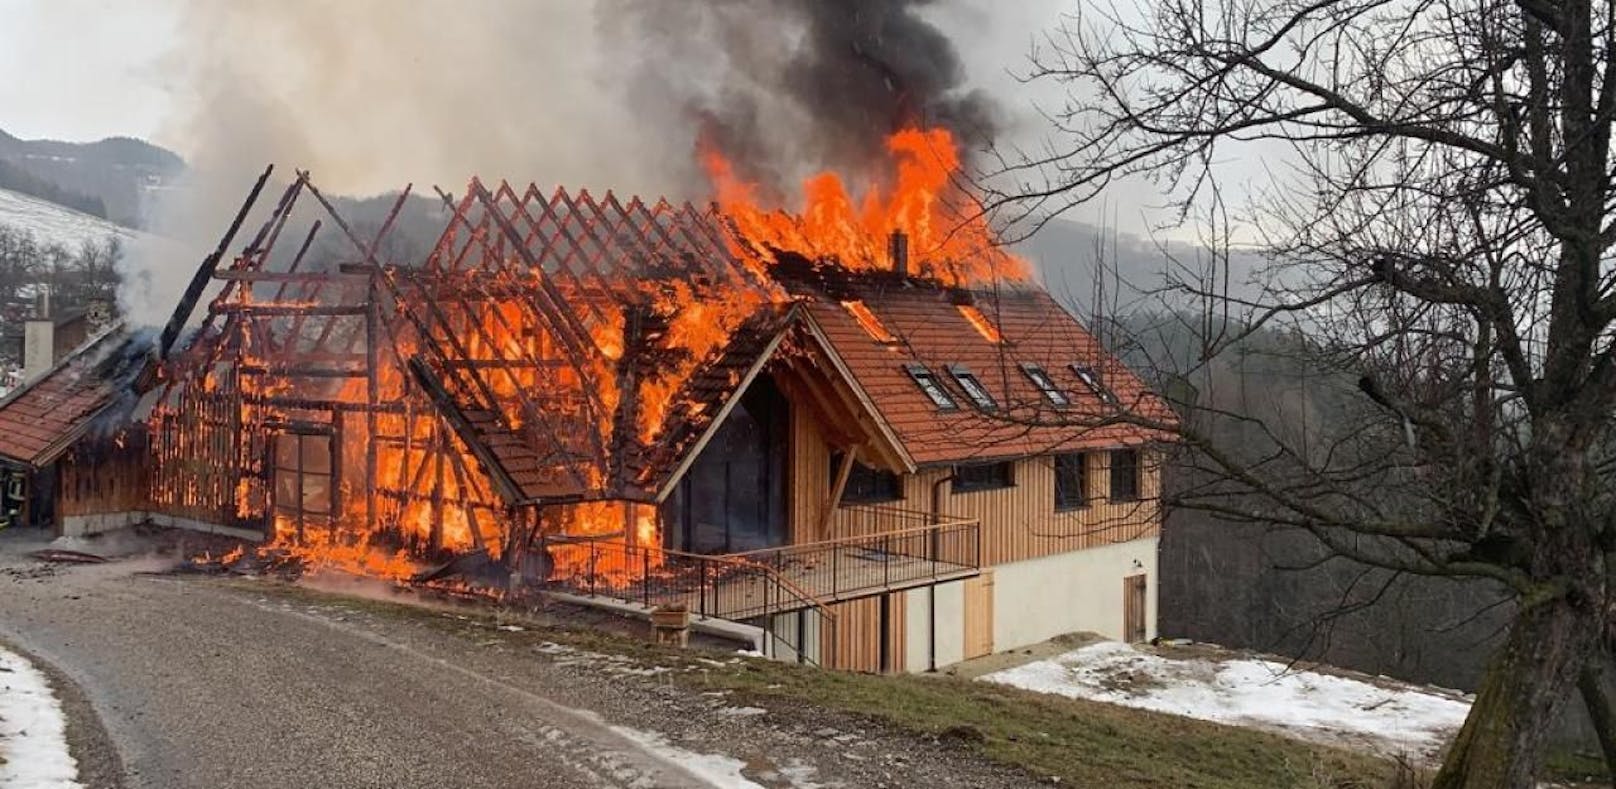 Bäuerliches Anwesen lichterloh in Flammen